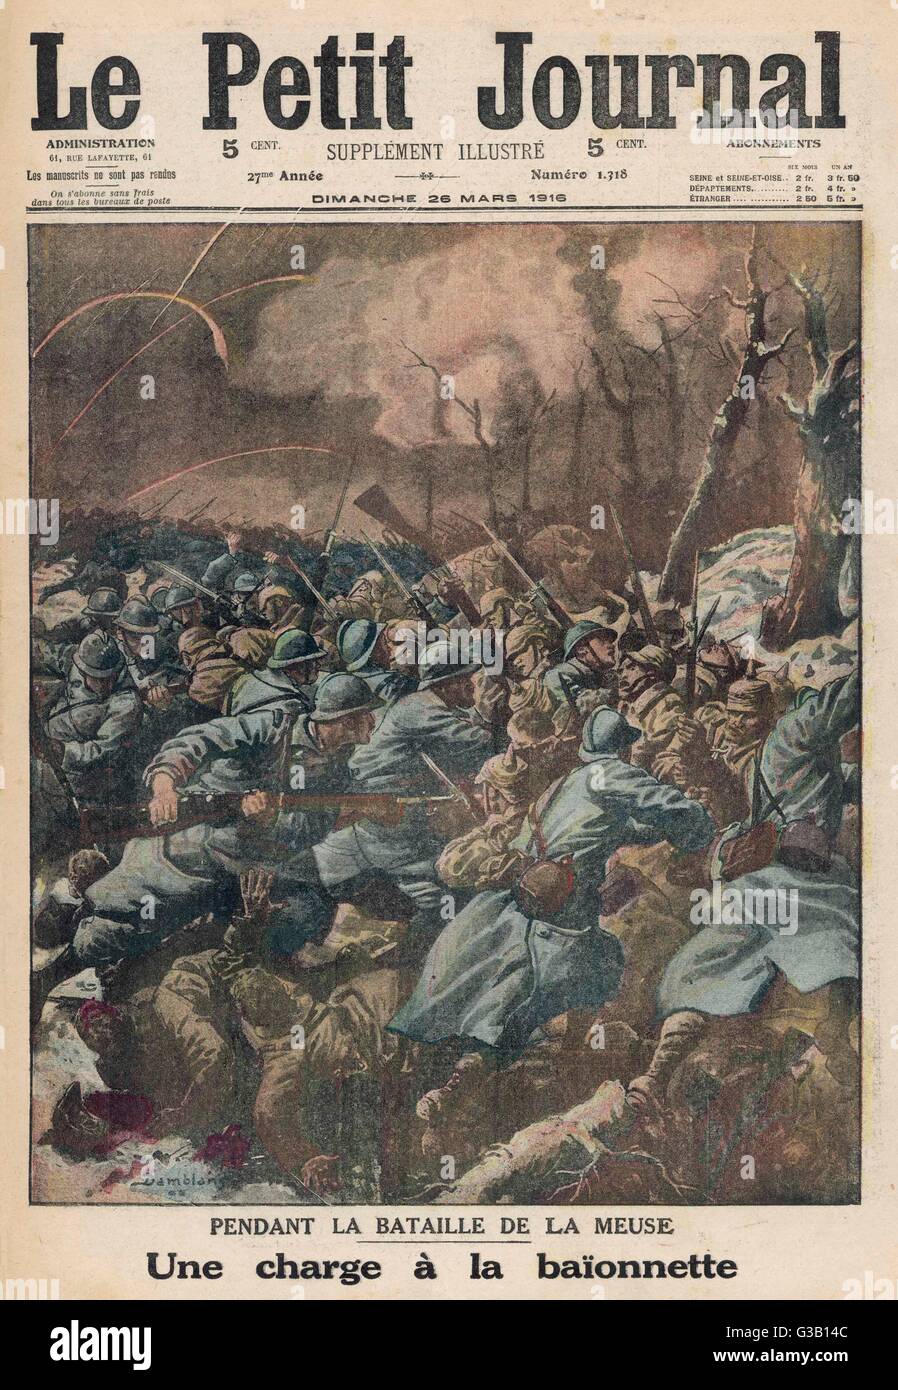 Französische Truppen machen eine Bajonett, während eines Kampfes am Ufer der Maas, Teil der fast einjährigen Schlacht von Verdun aufzuladen.      Datum: März 1916 Stockfoto